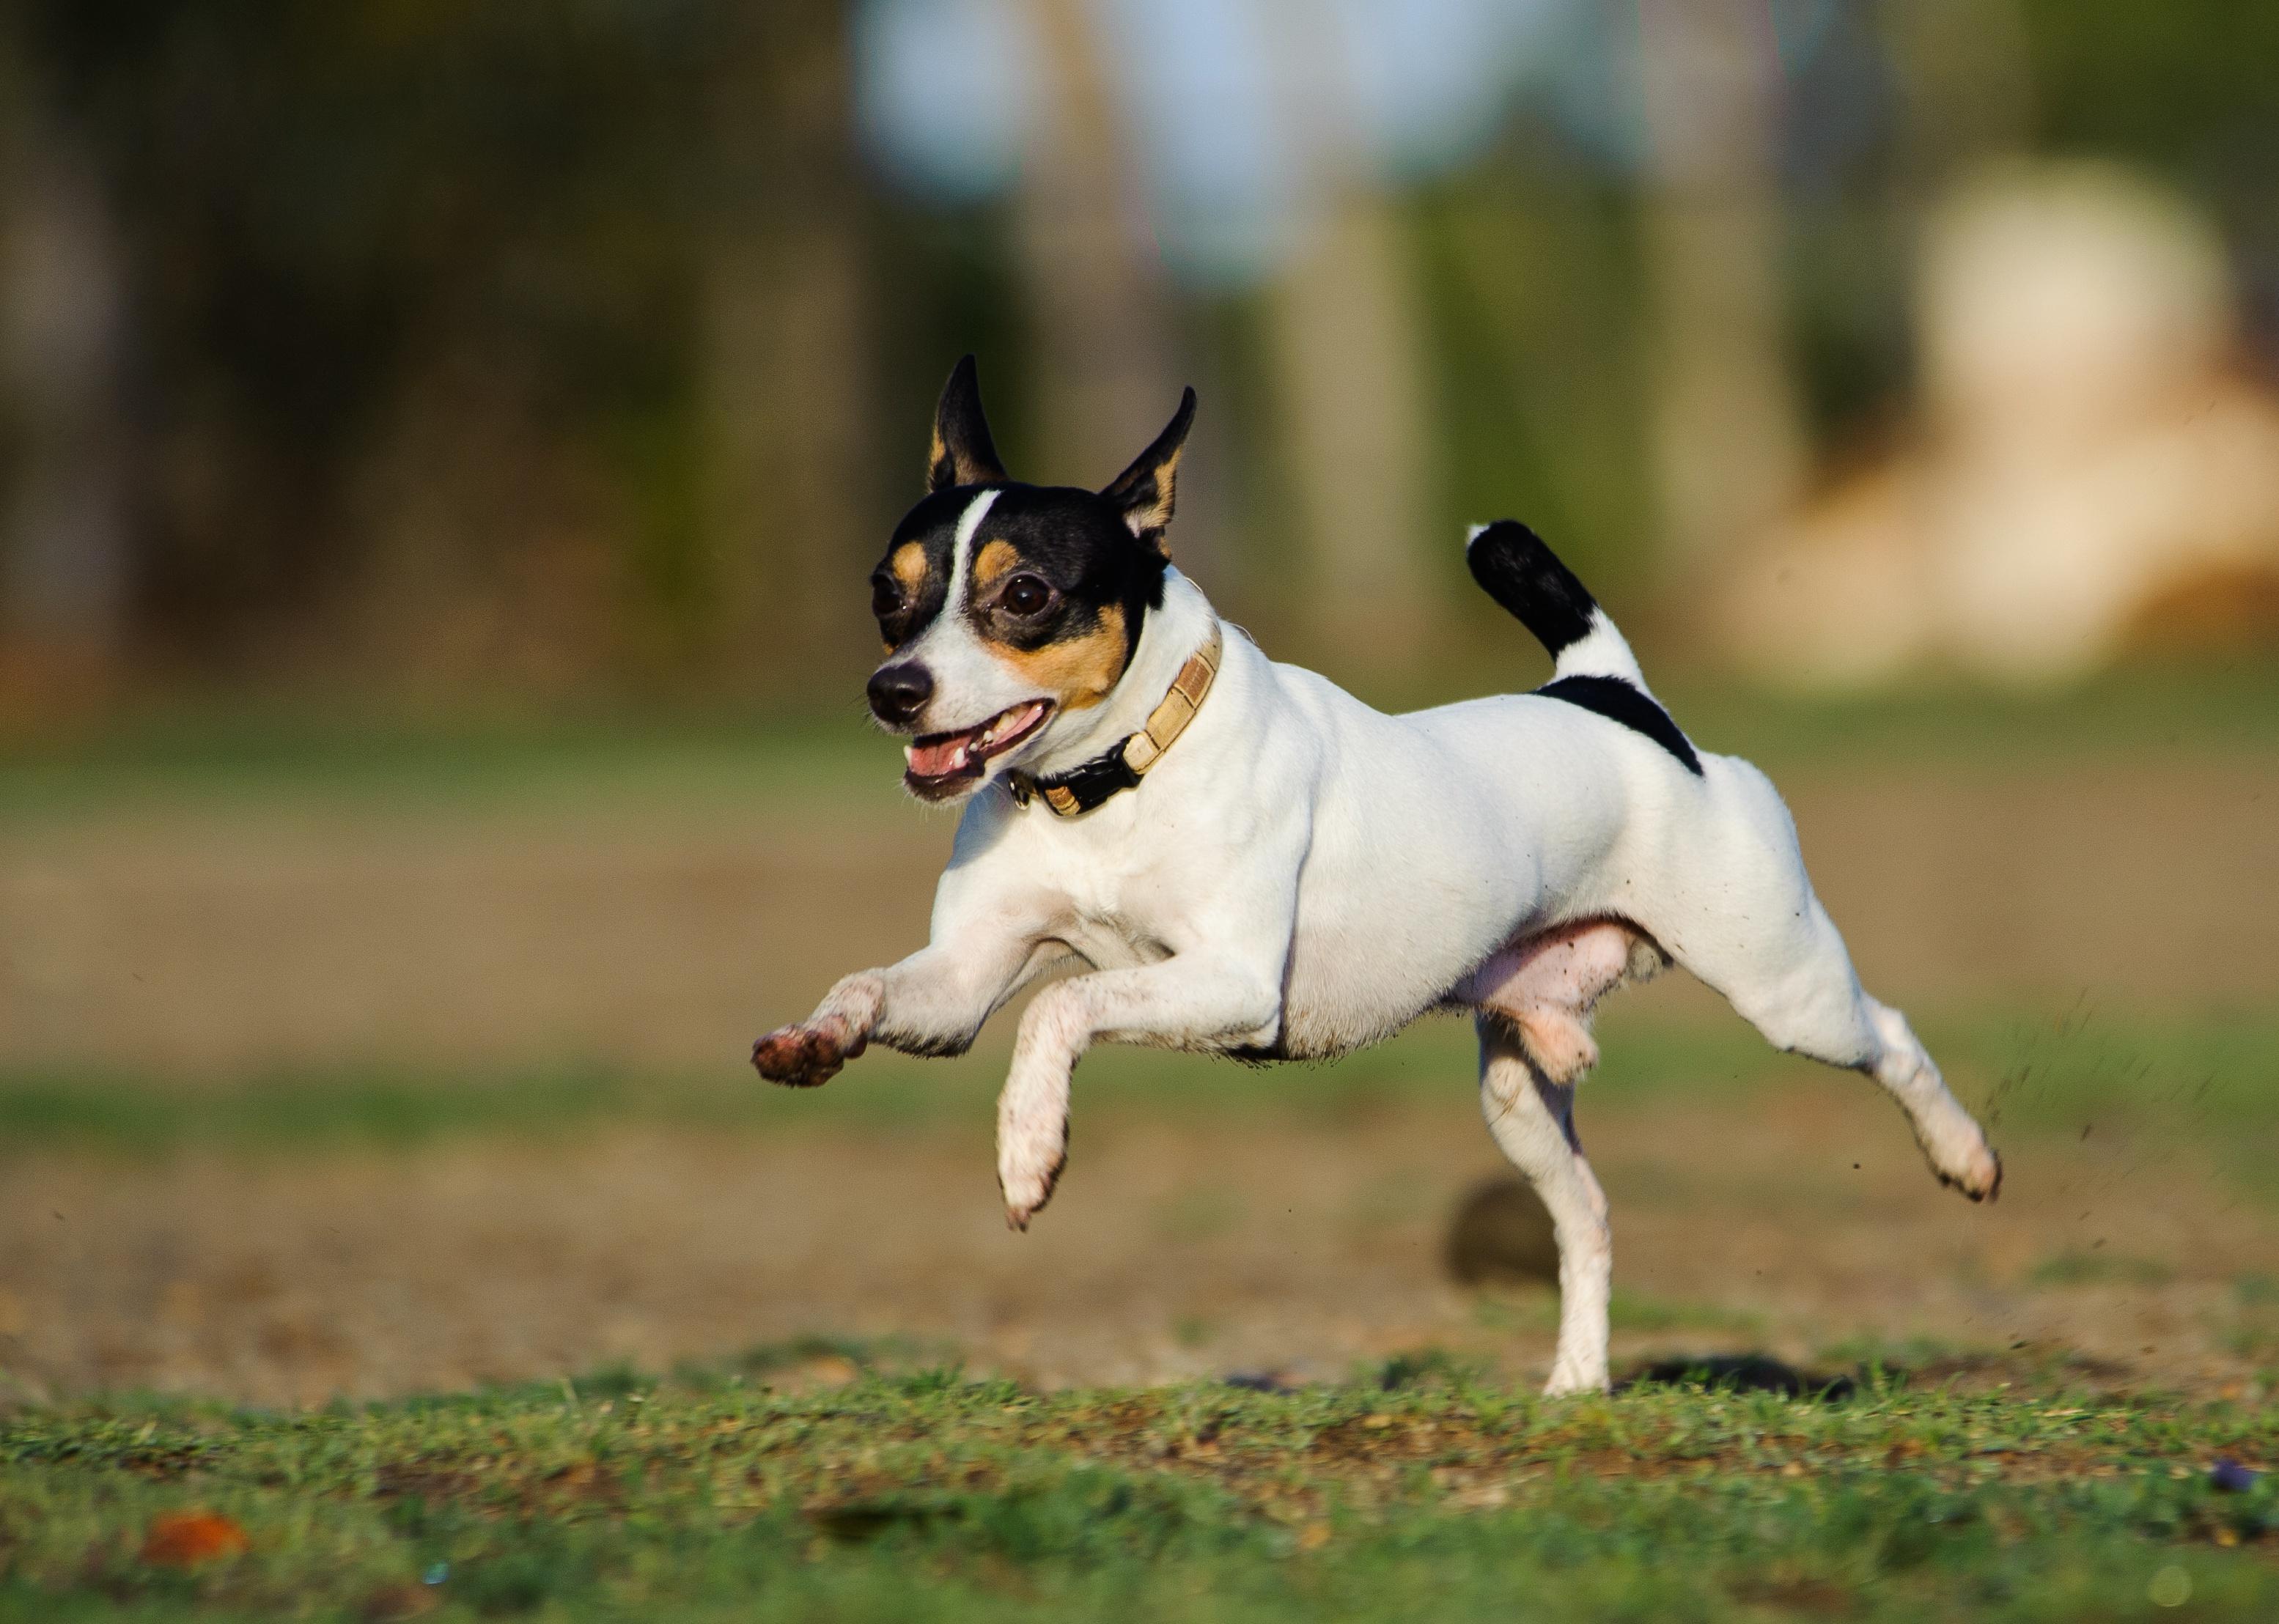 Toy Fox Terrier running through a grass field.